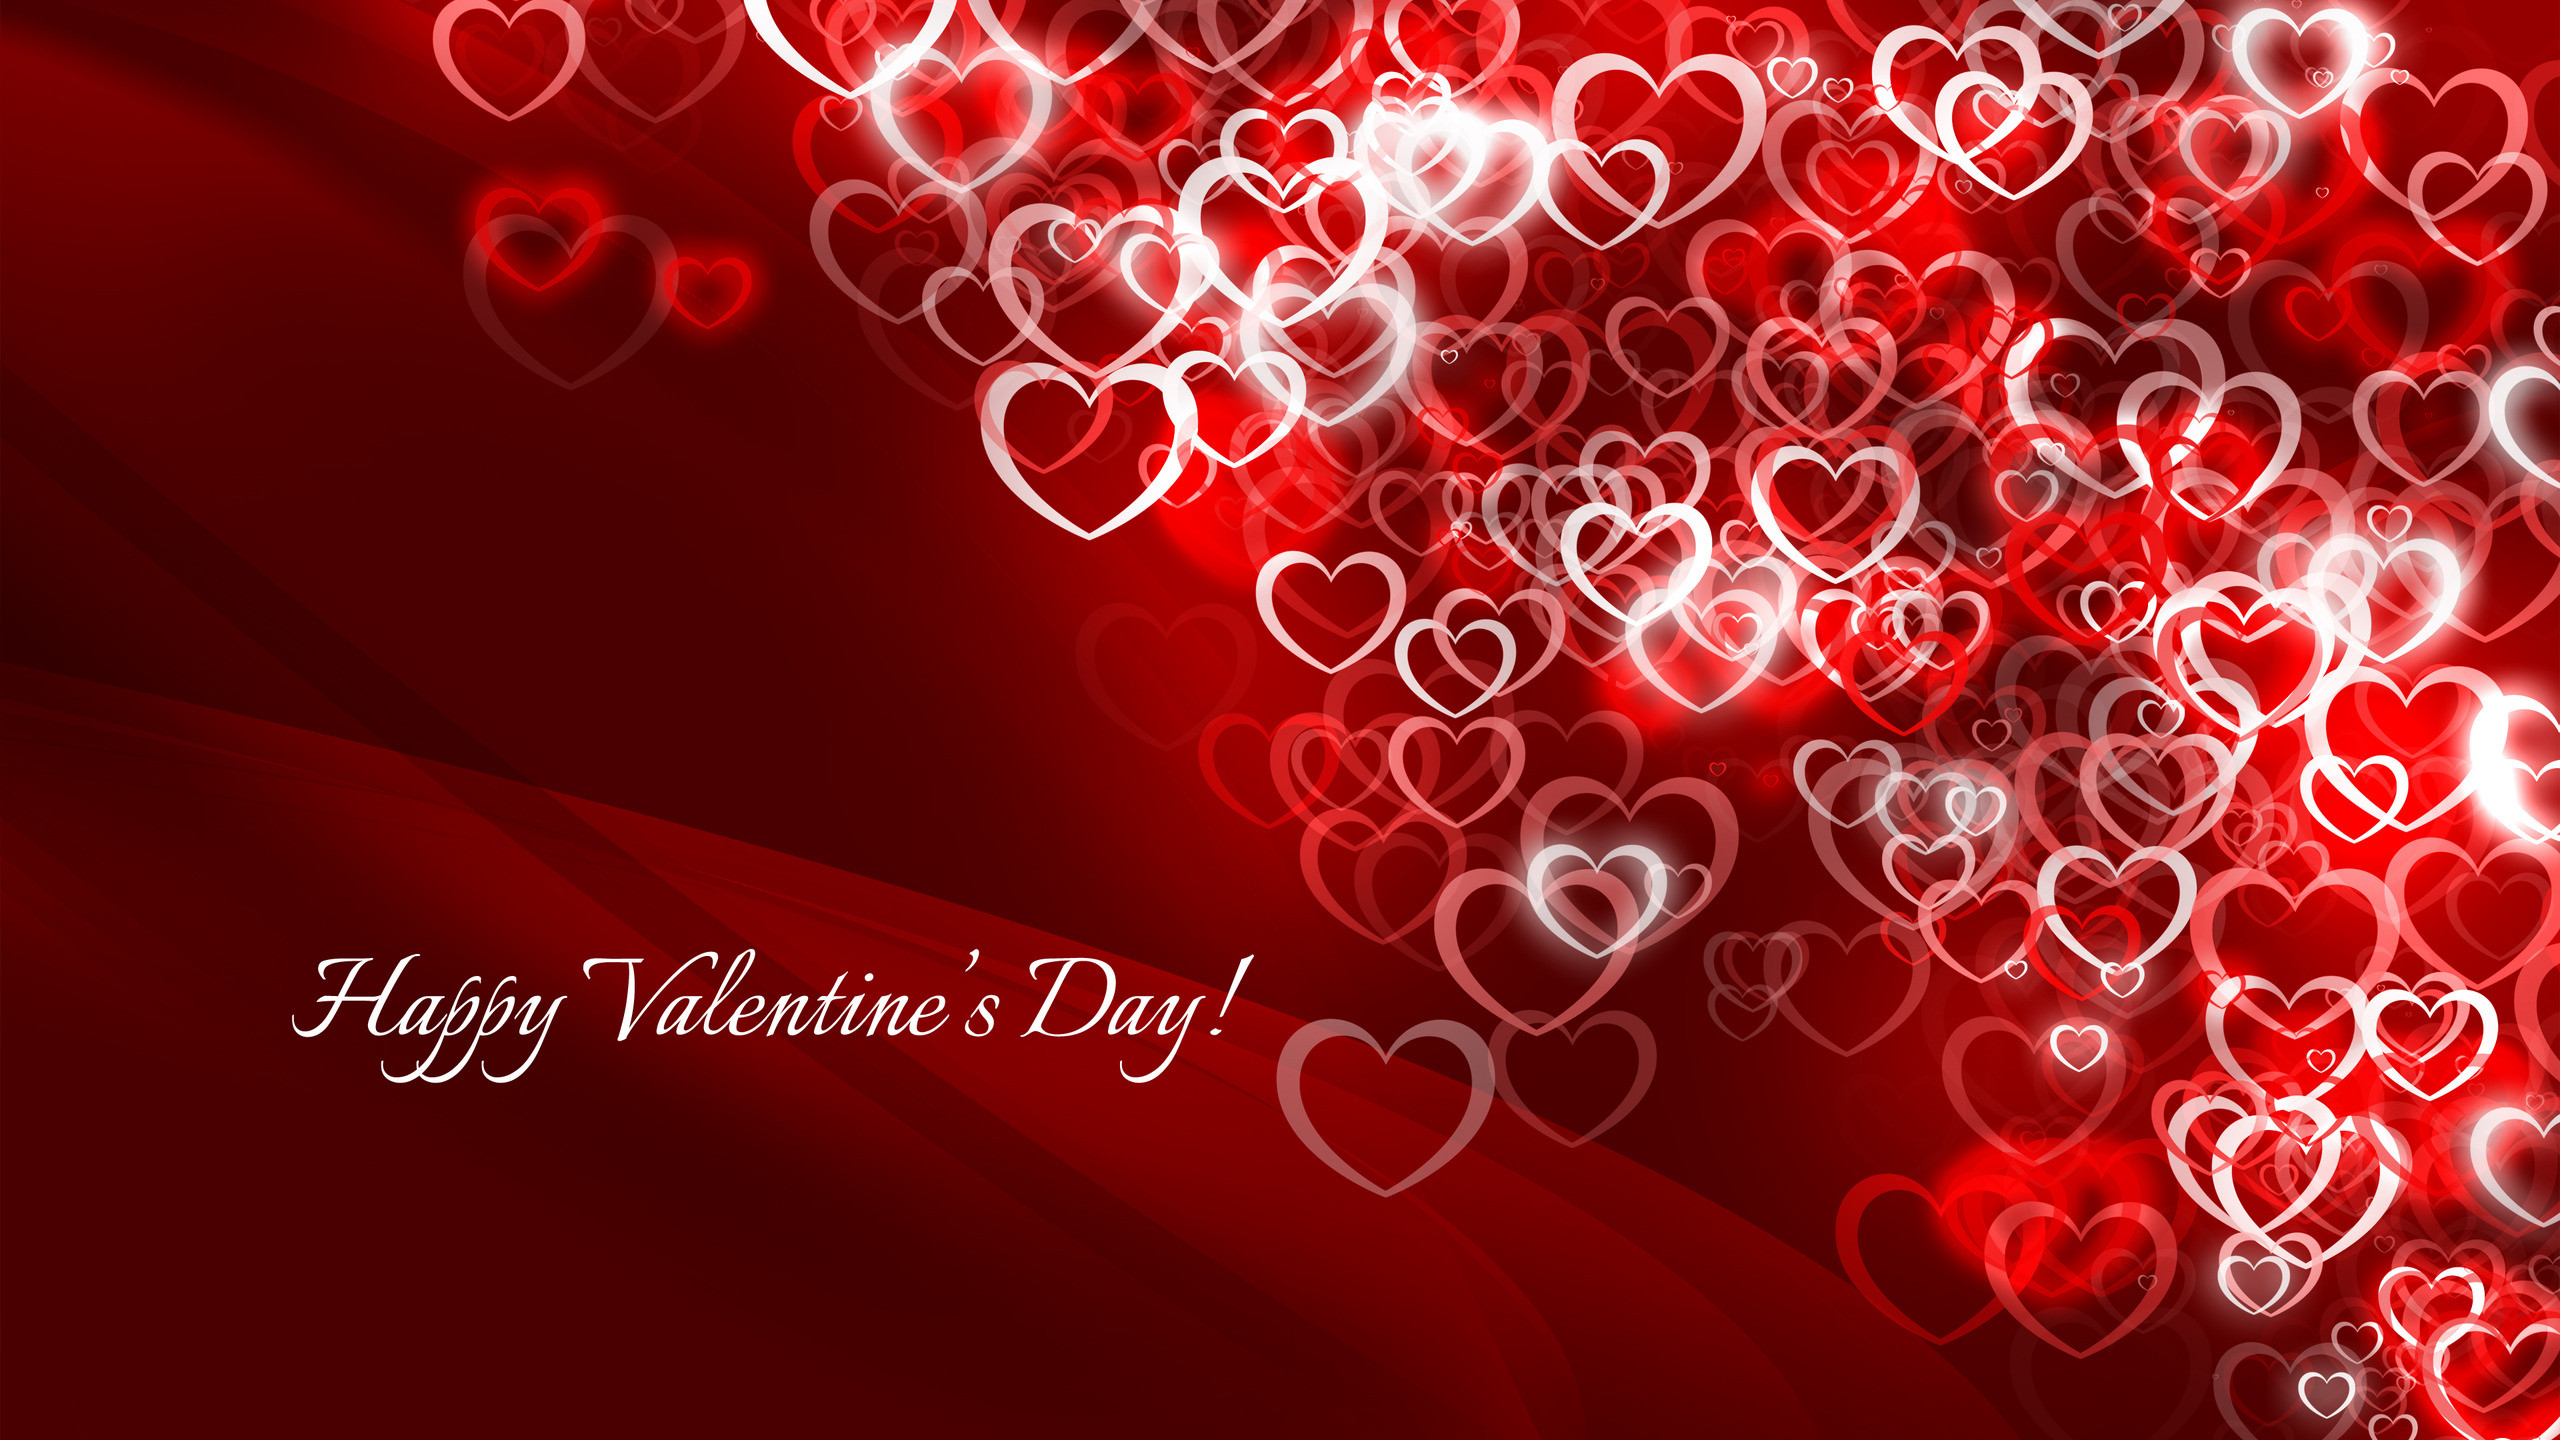 Boy & girl happy valentine day hd wallpaper | Valentines day ideas |  Pinterest